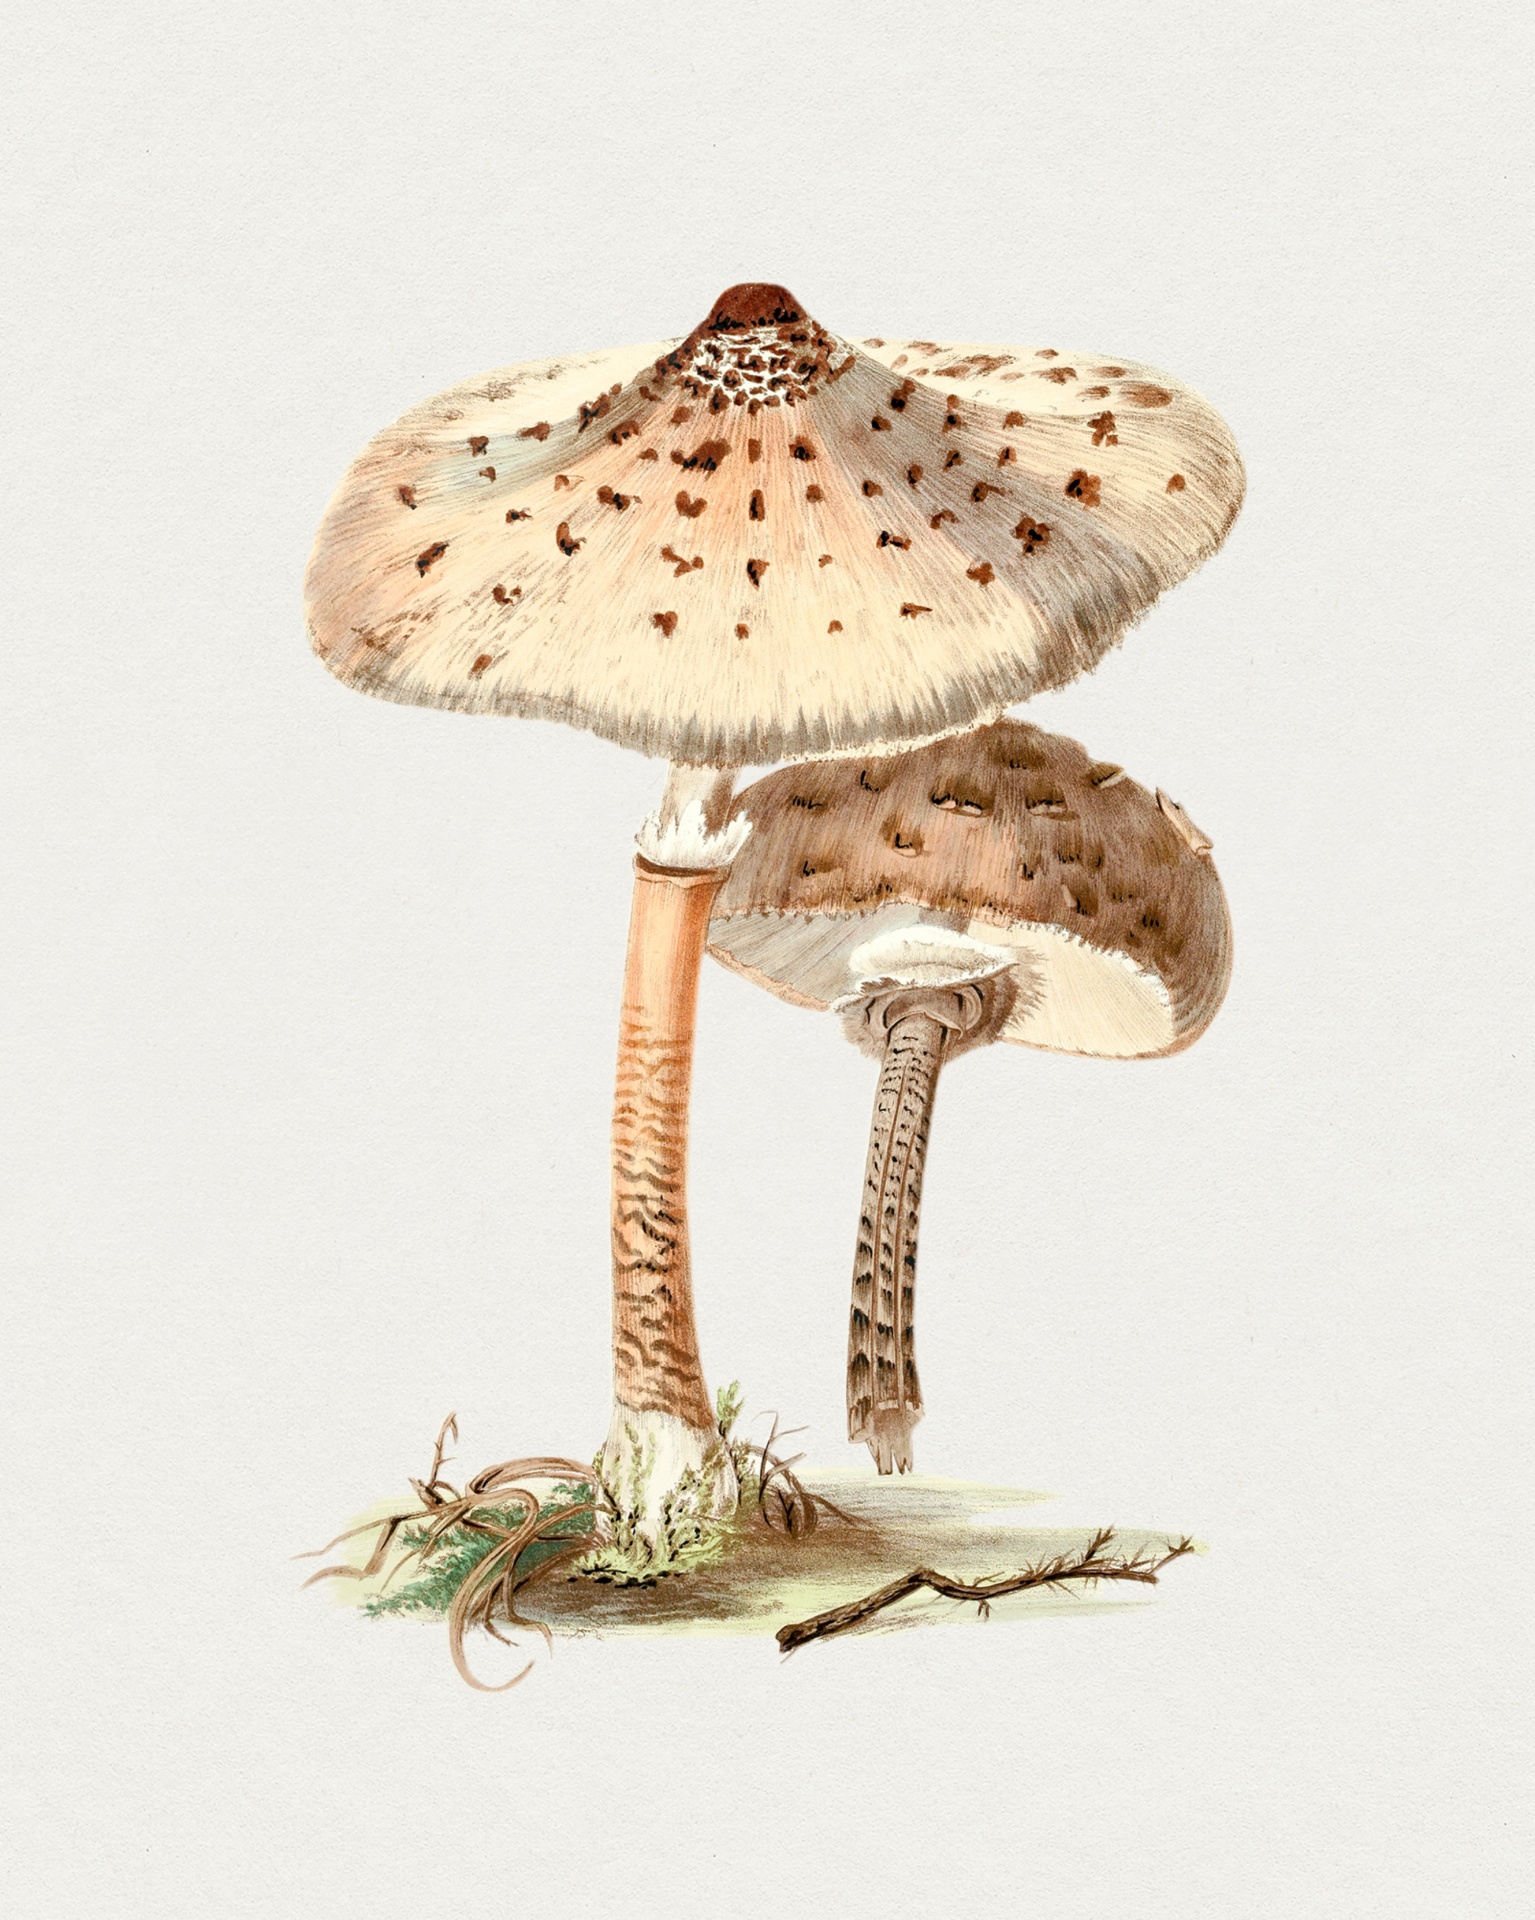 Mushrooms Champion Vintage Art